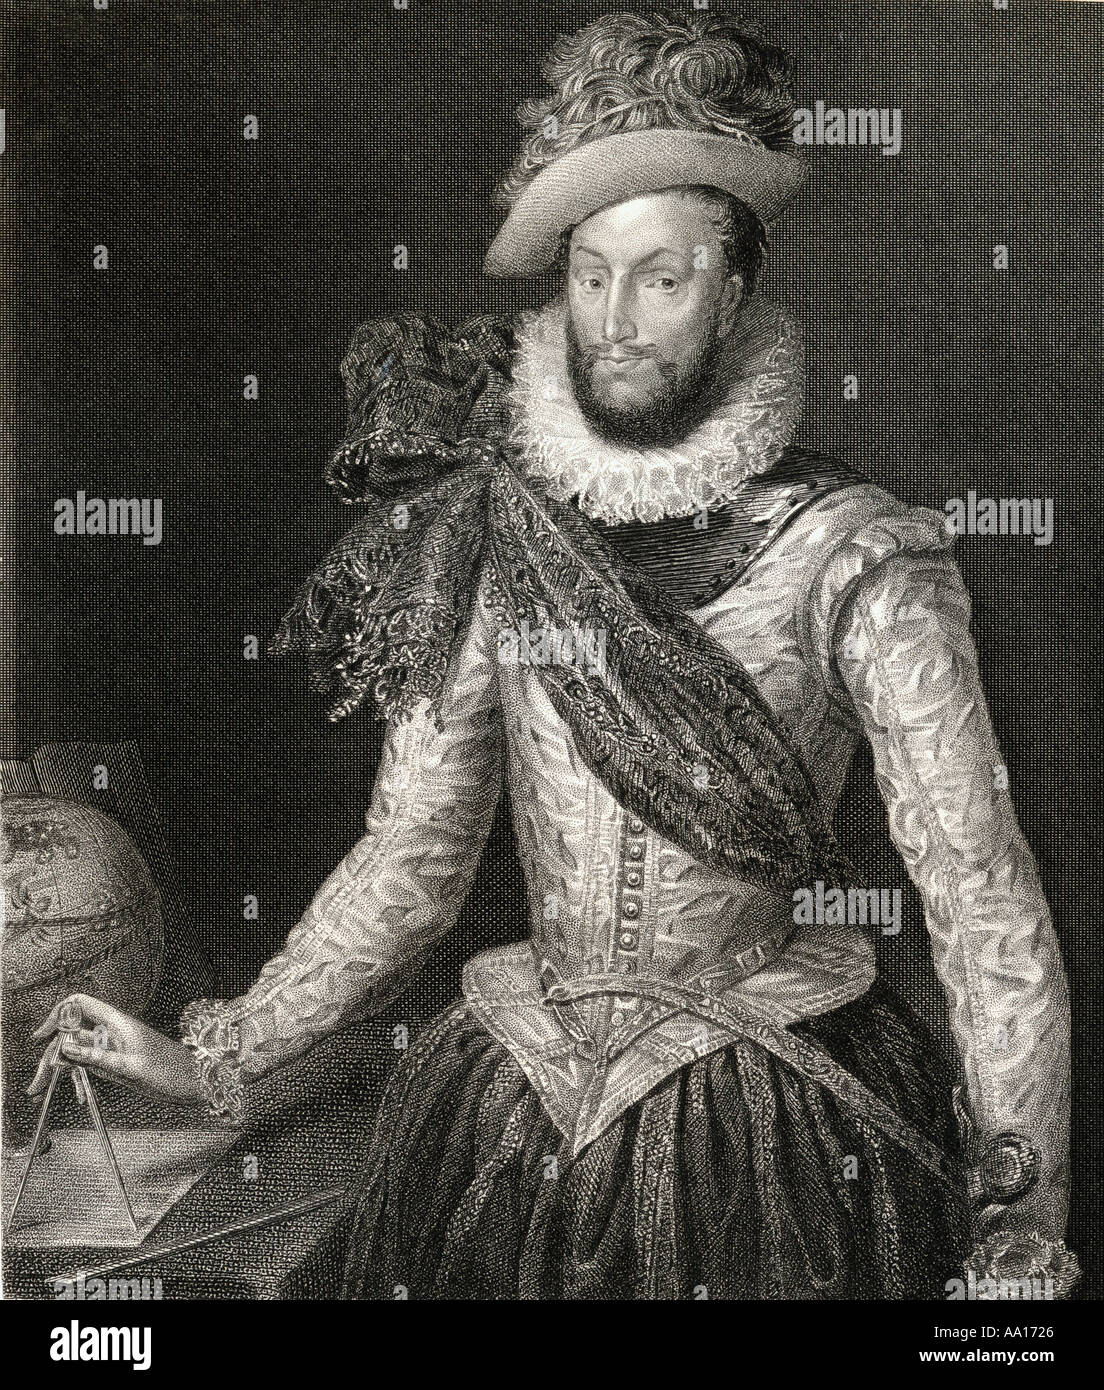 Sir Walter Raleigh, c 1554 - 1618. Débarquement anglais gentleman, poète, écrivain, militaire et politicien, courtisan, spy et explorer. Banque D'Images